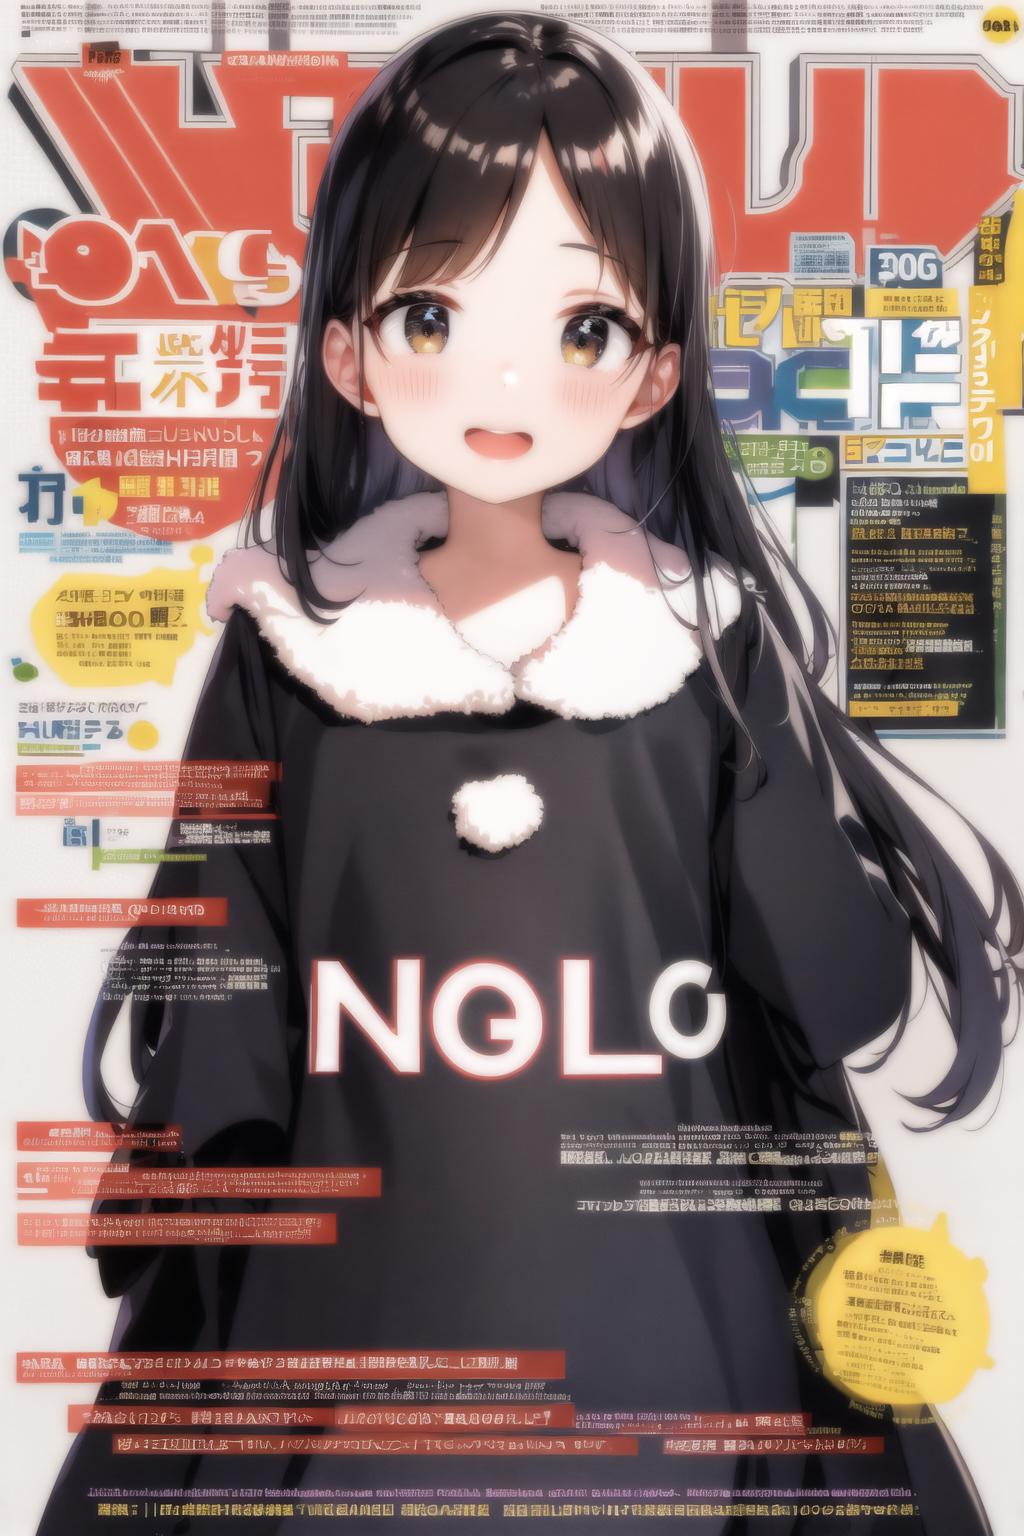 Anime magazine layout | MidnightPrivilege